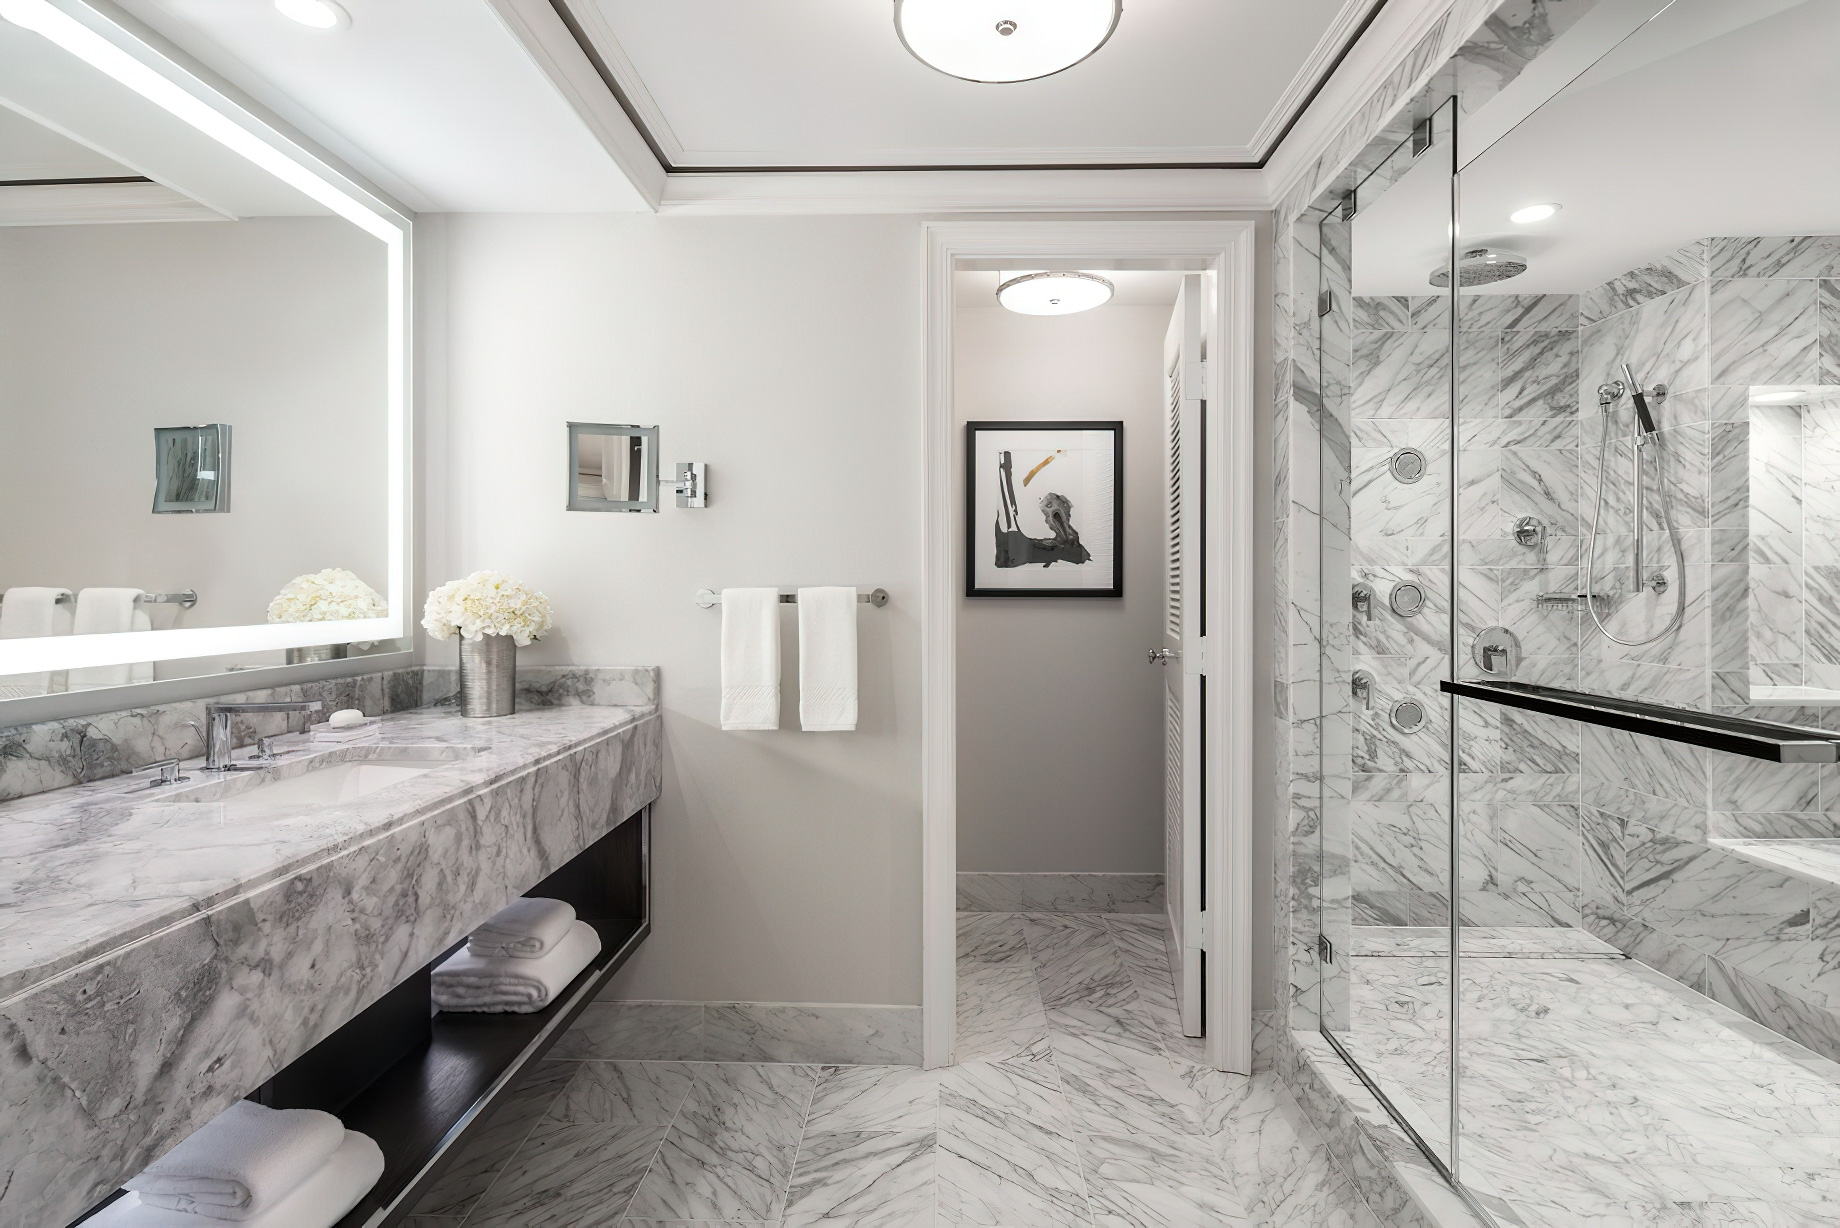 The Ritz-Carlton, St. Louis Hotel - St. Louis, MO, USA - Ritz-Carlton Suite Bathroom Shower